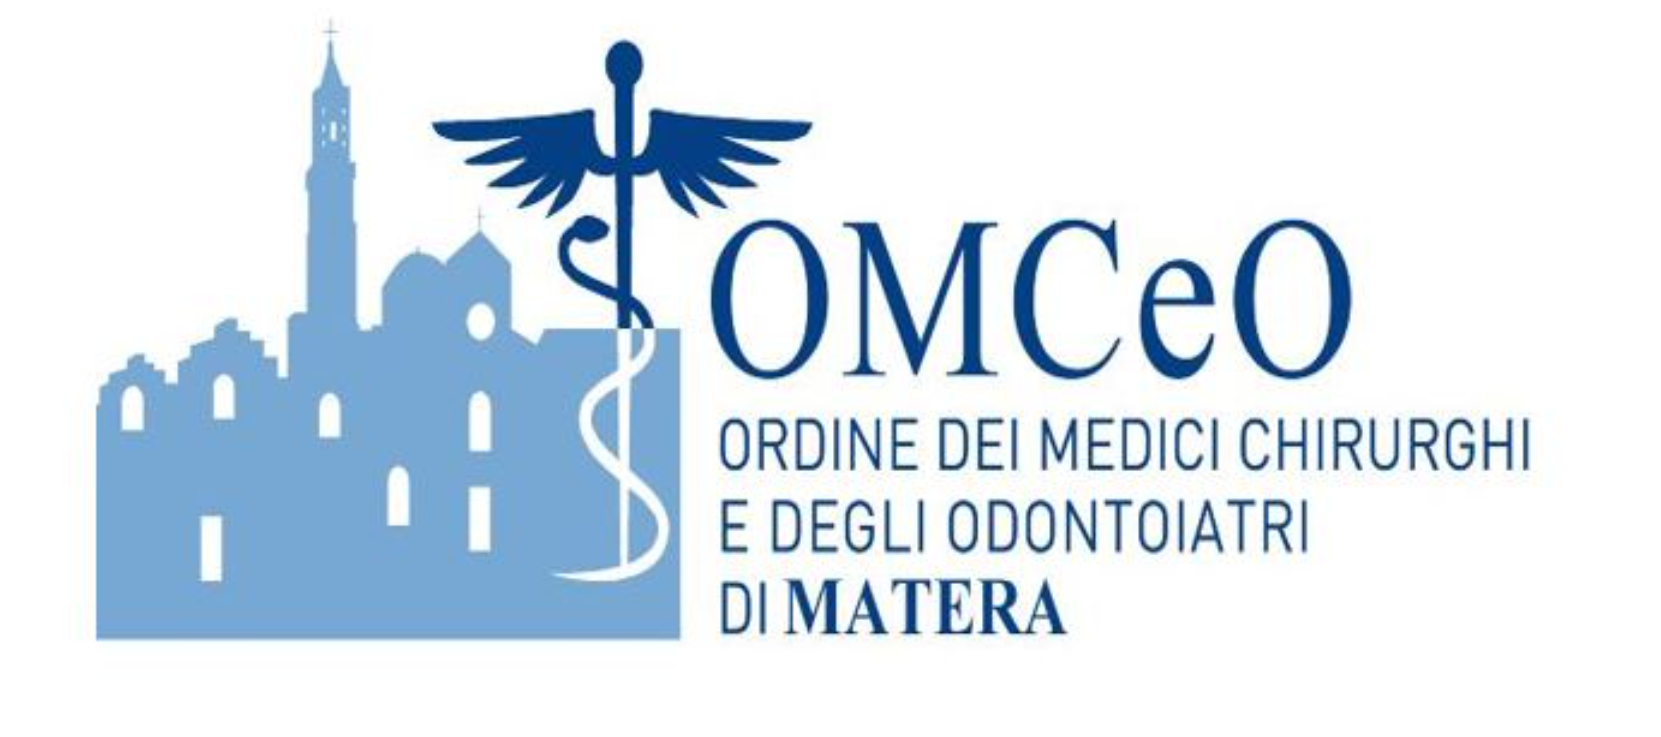 I ringraziamenti dell’Ordine dei Medici Chirurghi e Odontoiatri di Matera ai colleghi Annese, Santarsia e D’Onofrio